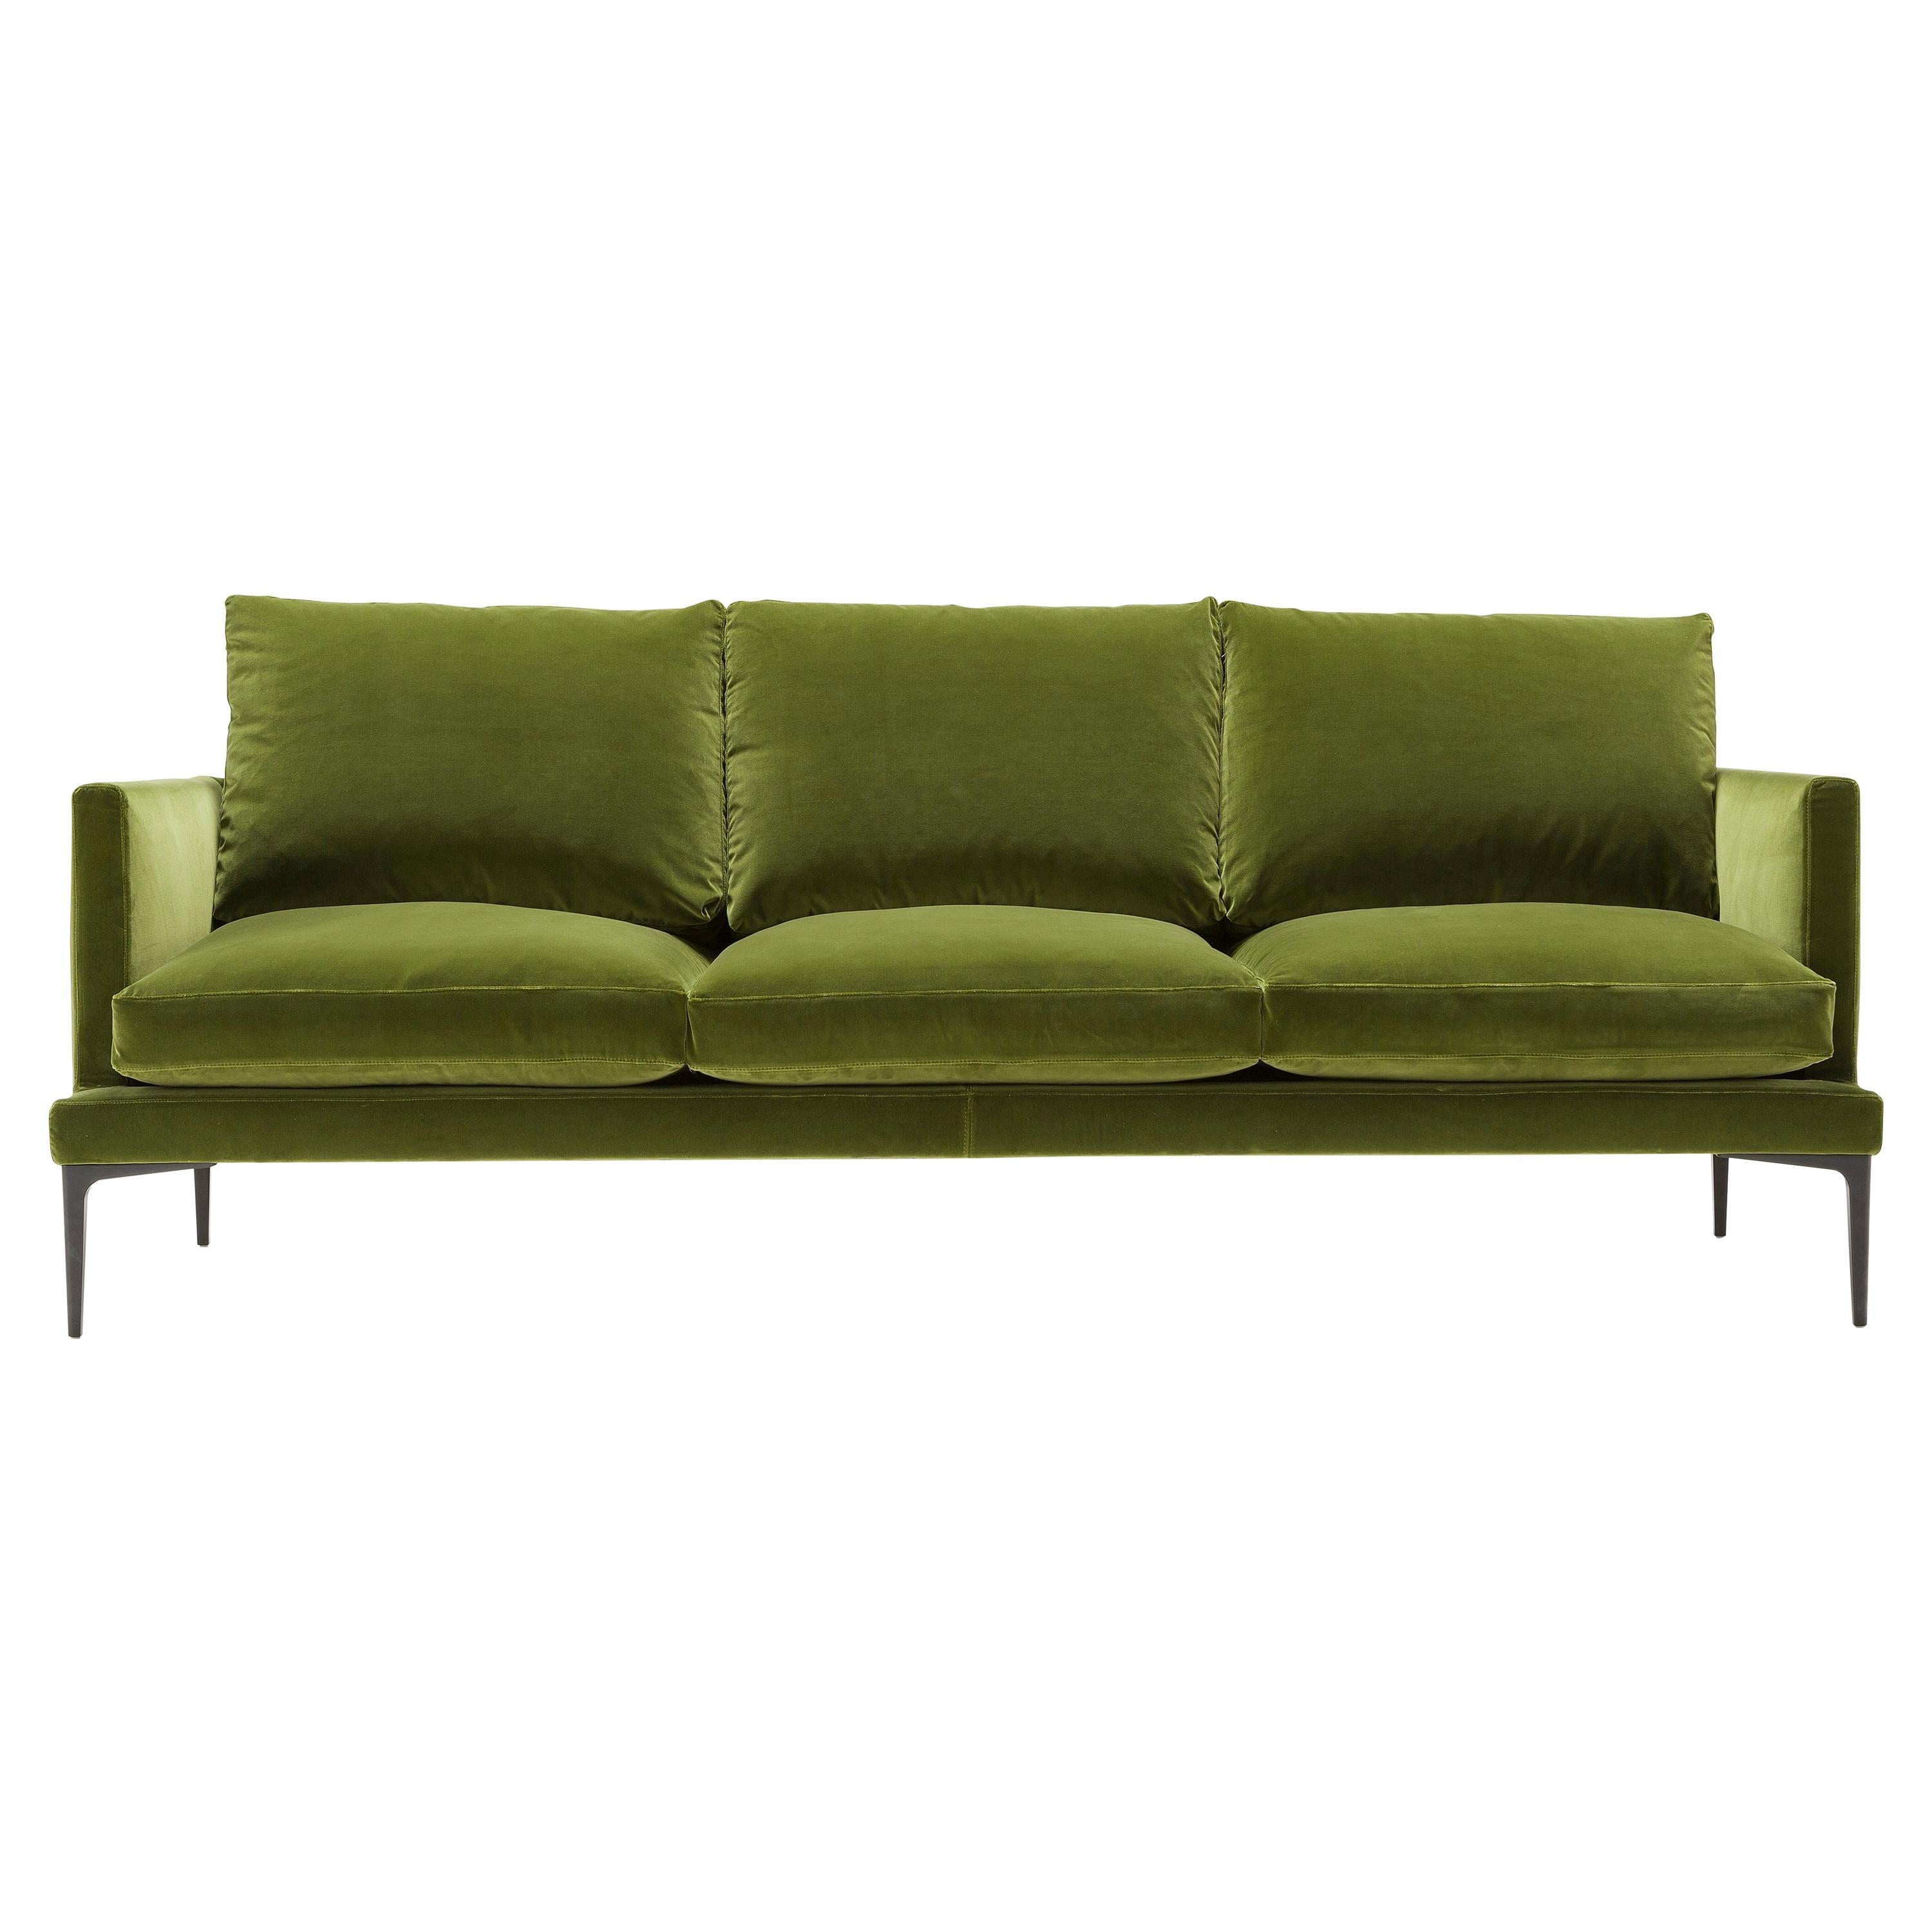 Amura 'Segno' Sofa in Olive Green Velvet by Amura Lab